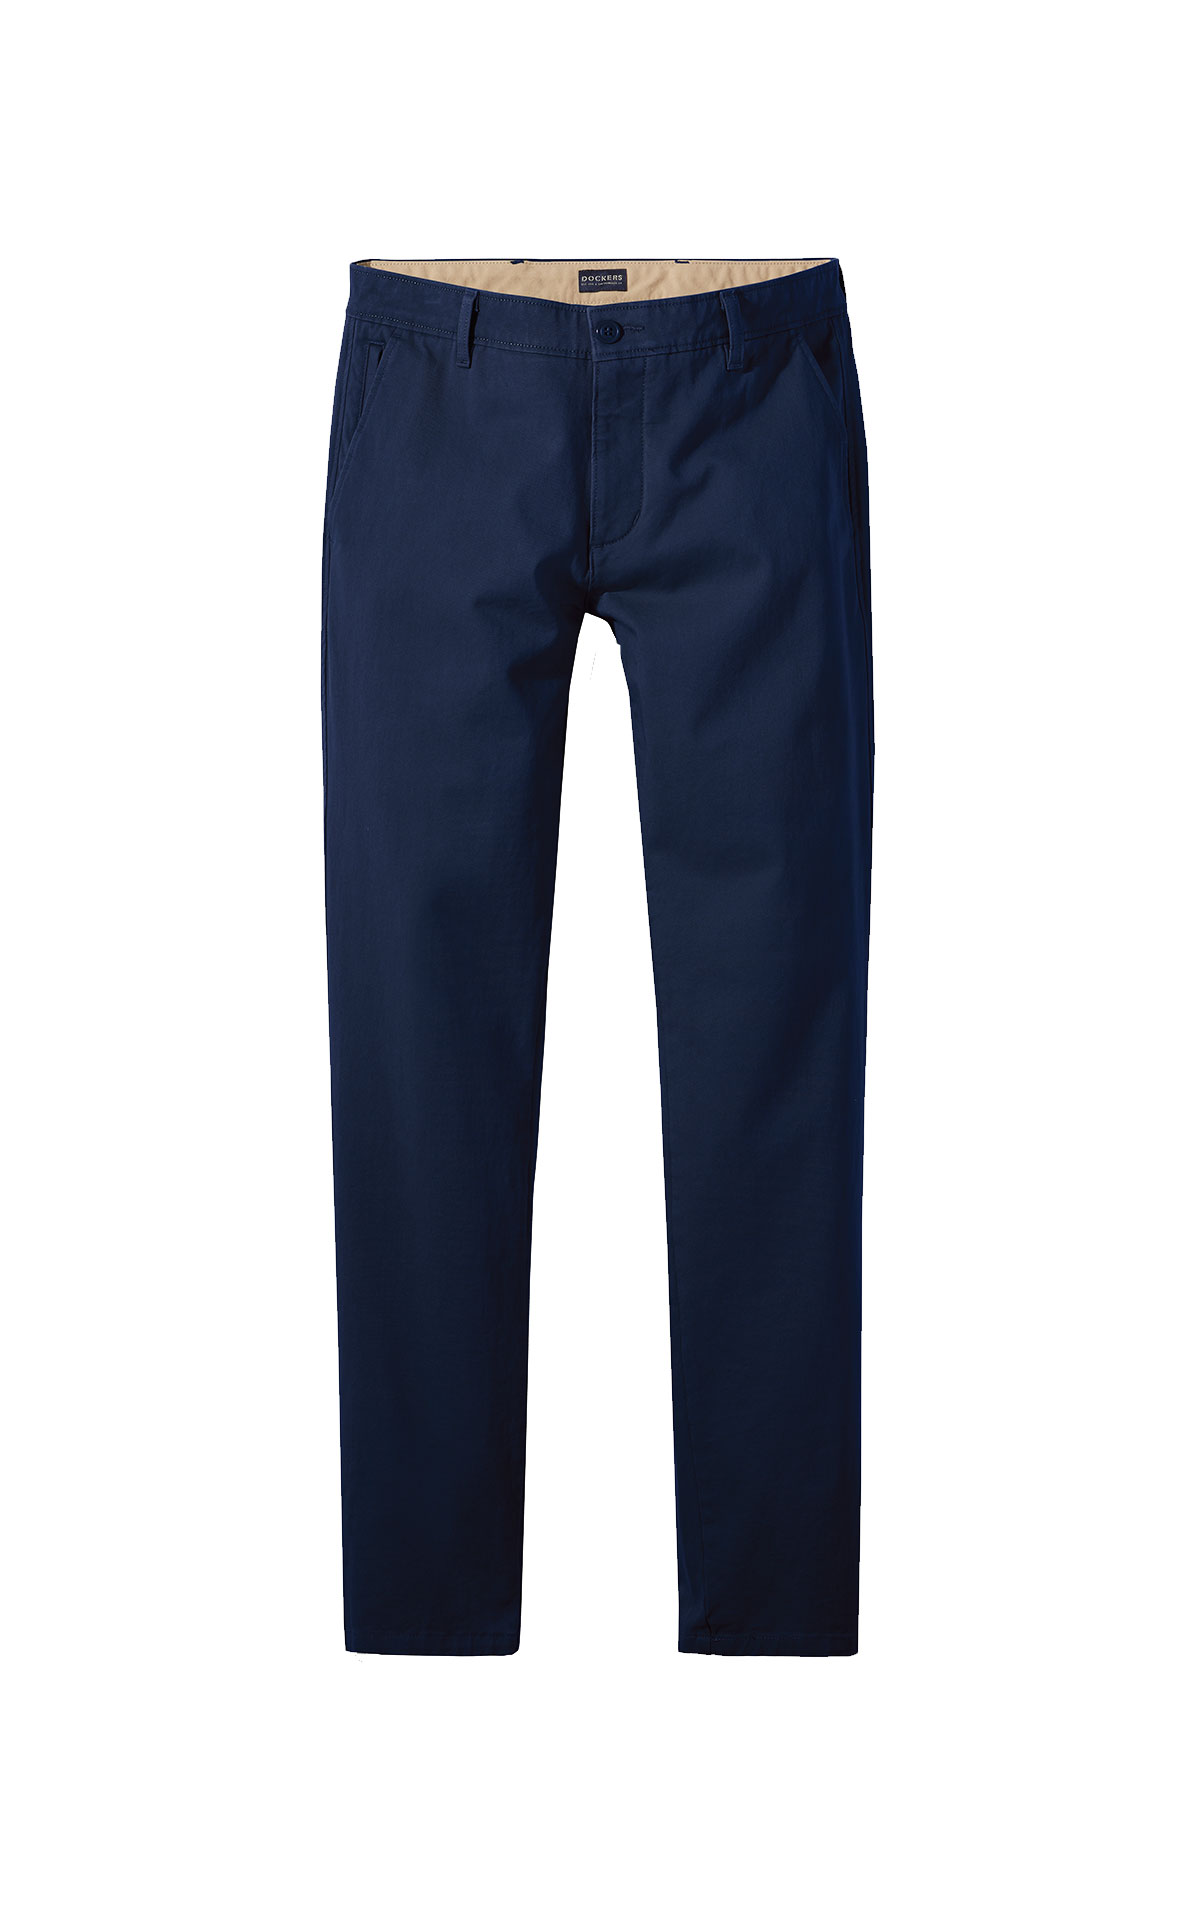 Navy blue Skinny pants Dockers